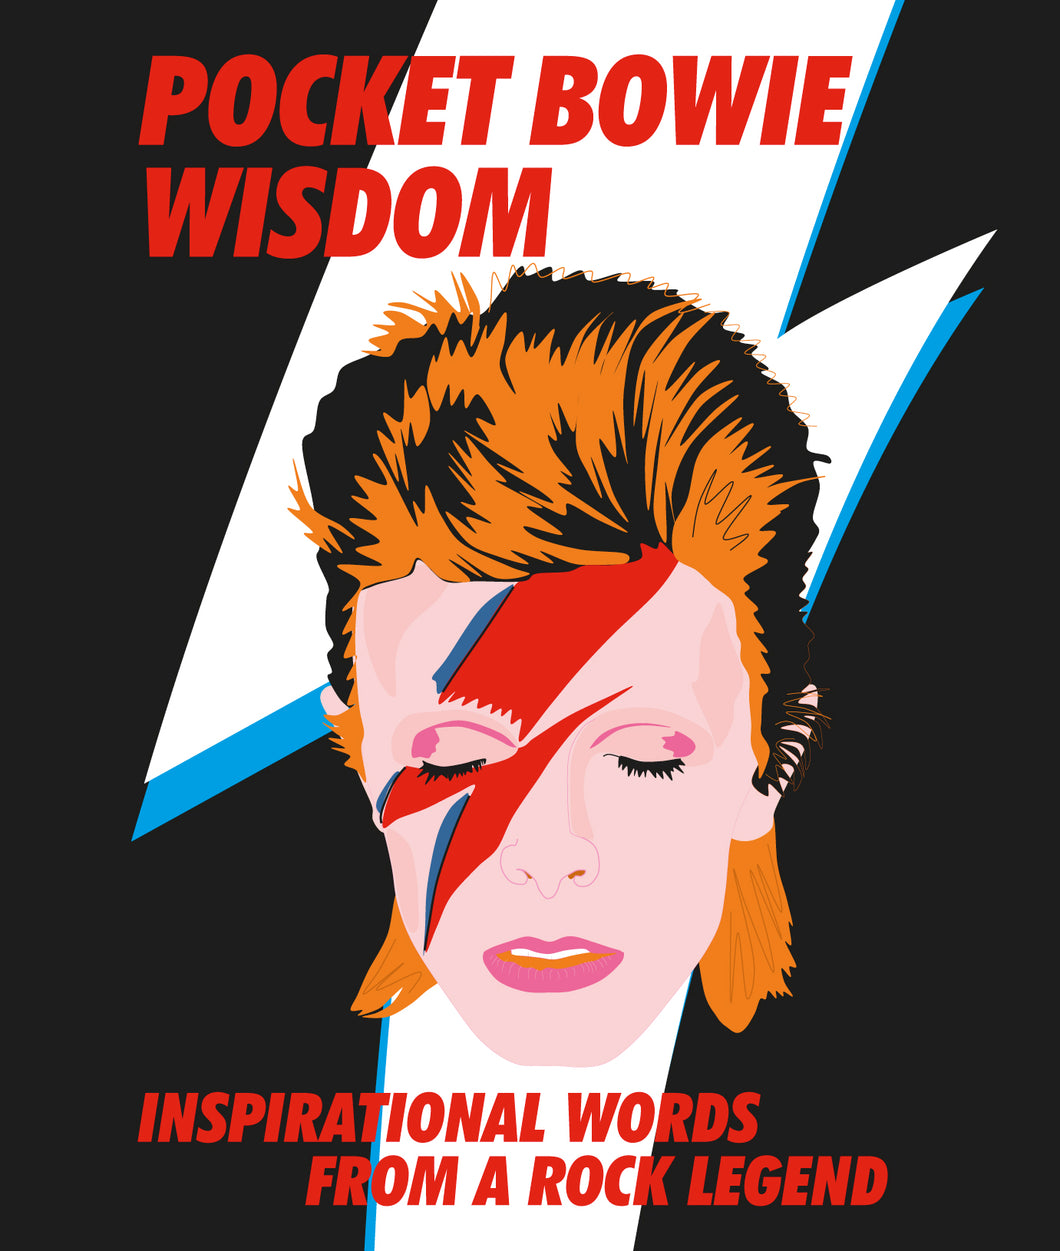 Pocket Bowie Wisdom Book